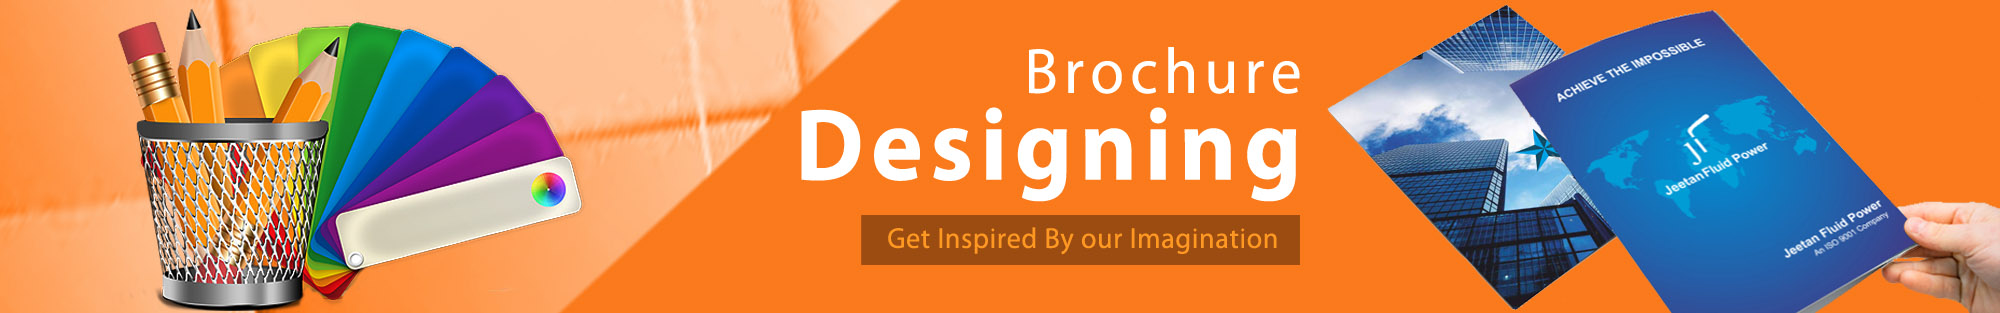 Brochure Designing | stationery design services